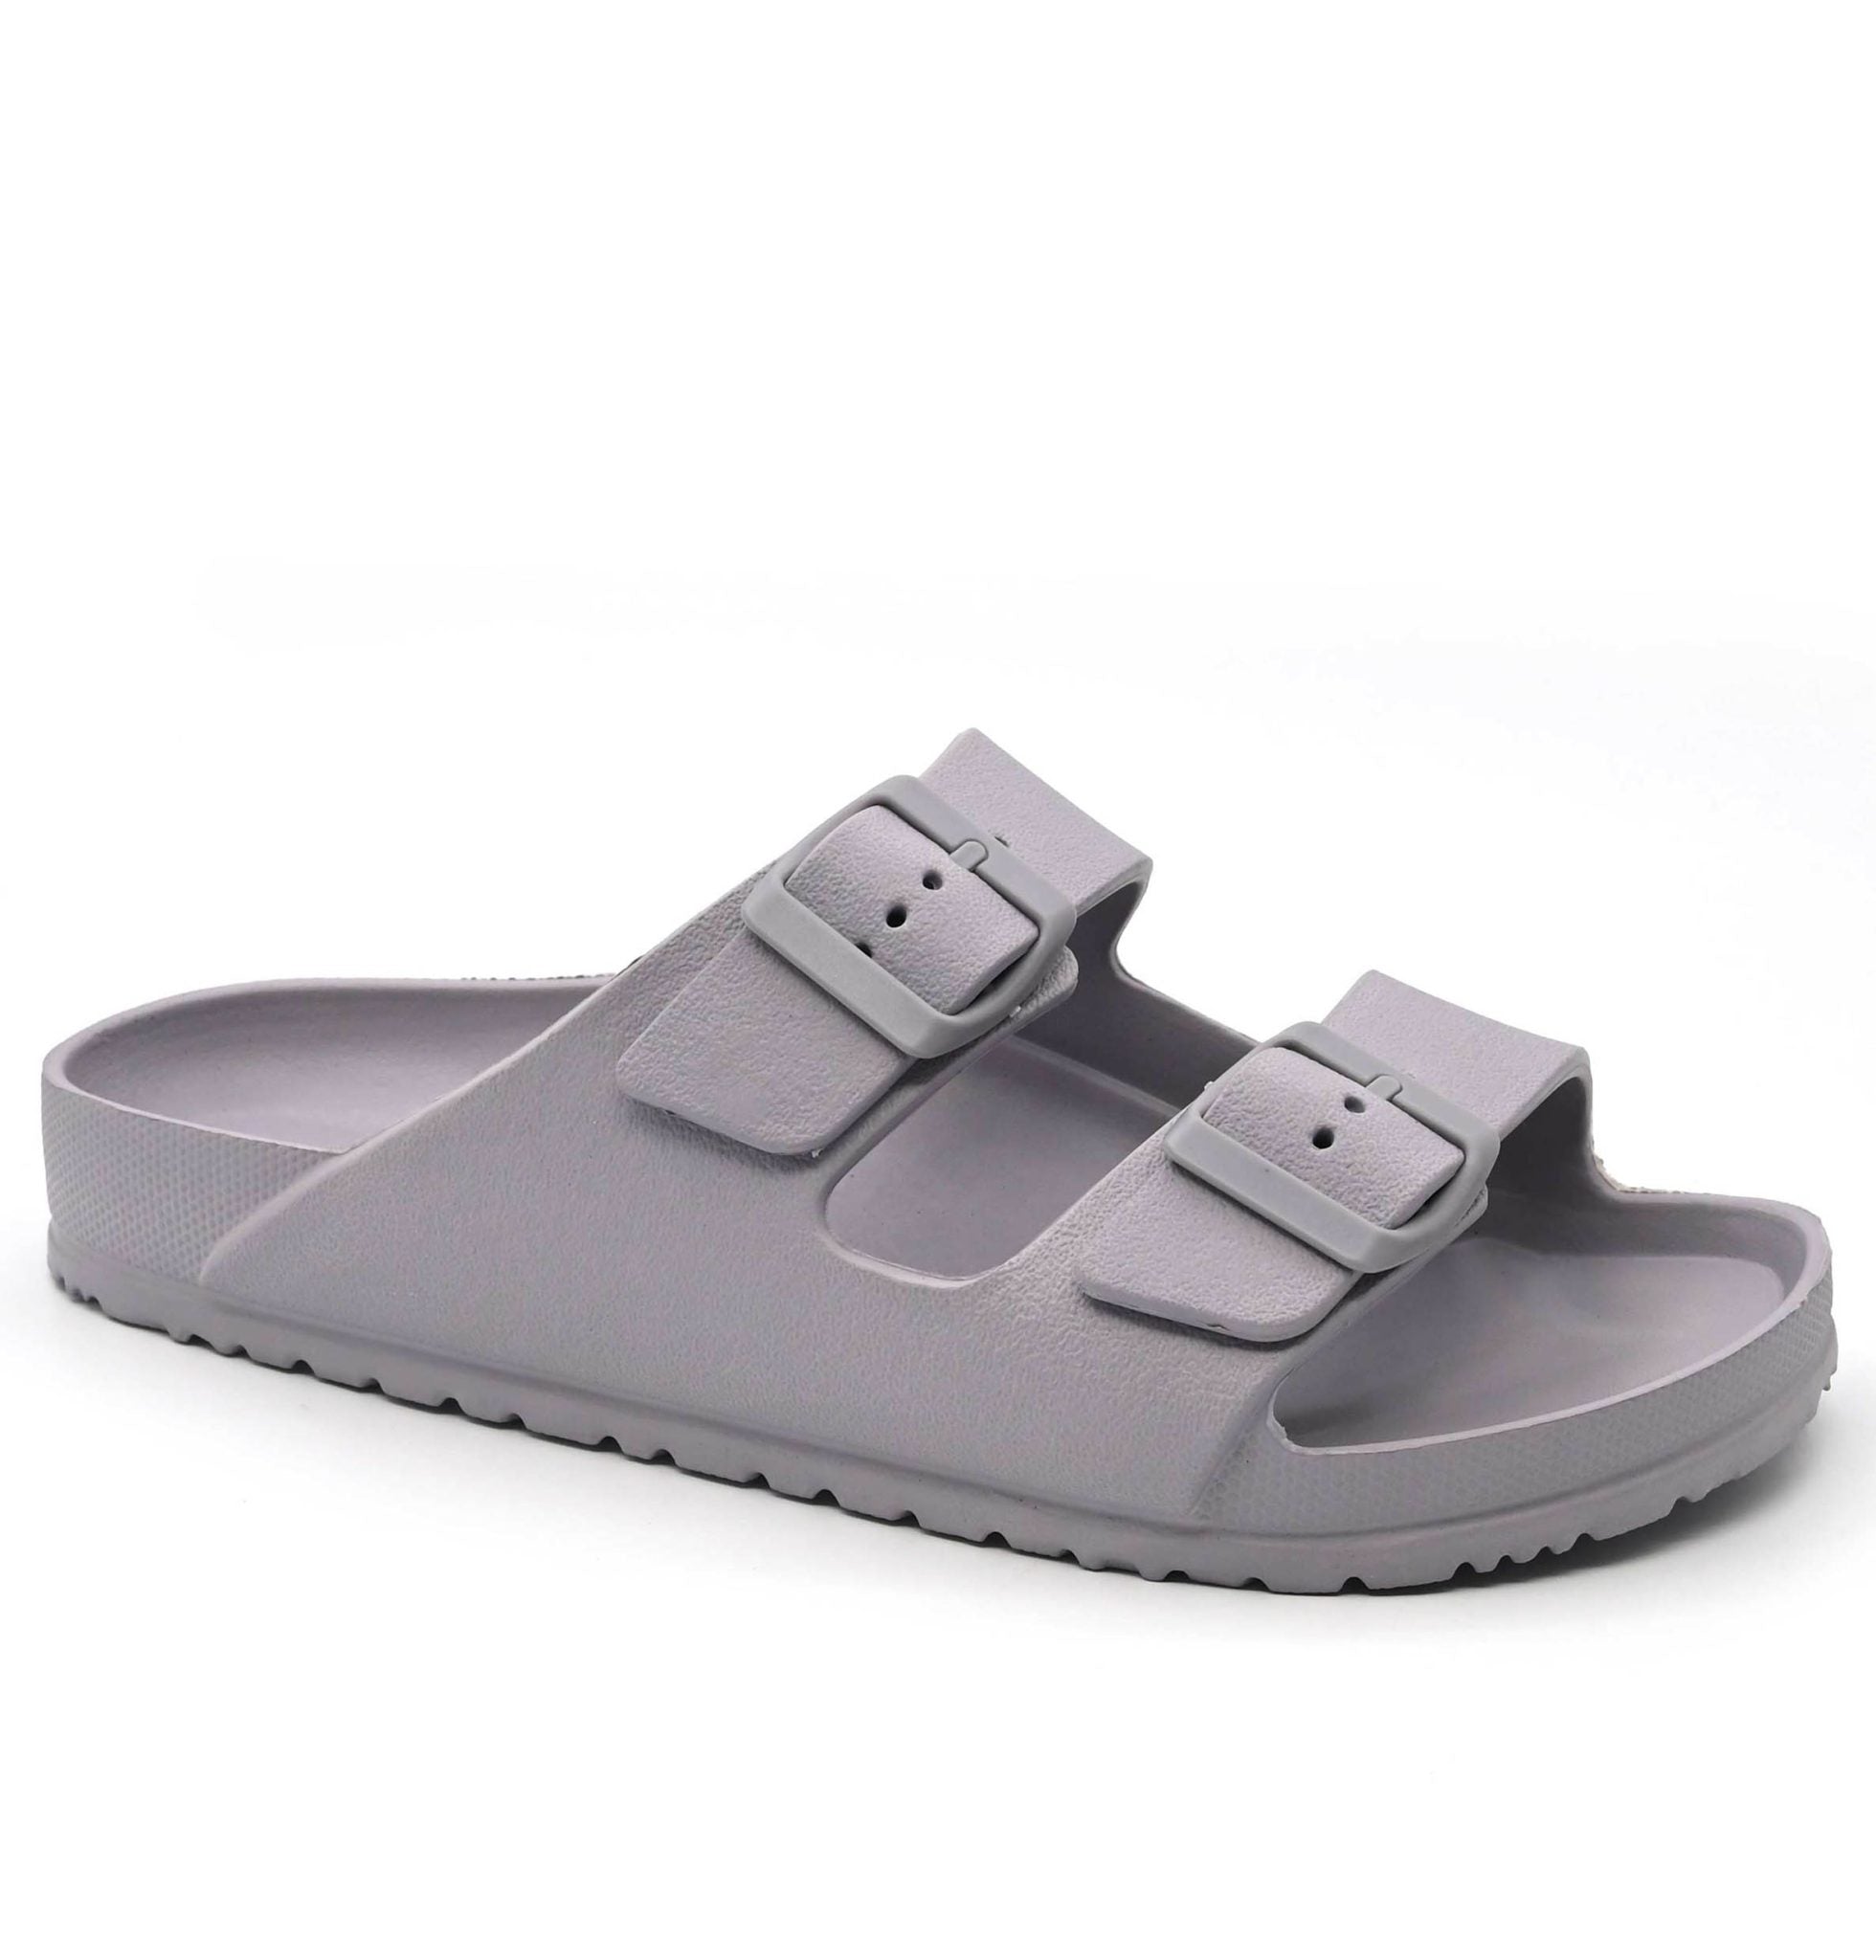 Grey Shell Sandals - bestacaiberryselect